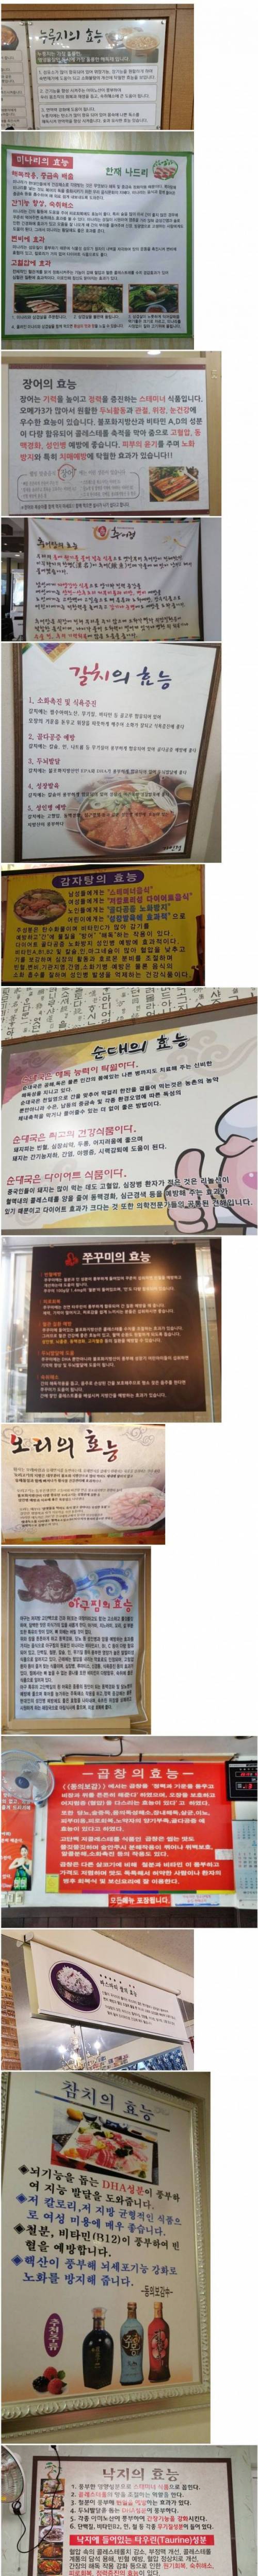 [스압] 한국식당 특징.jpg